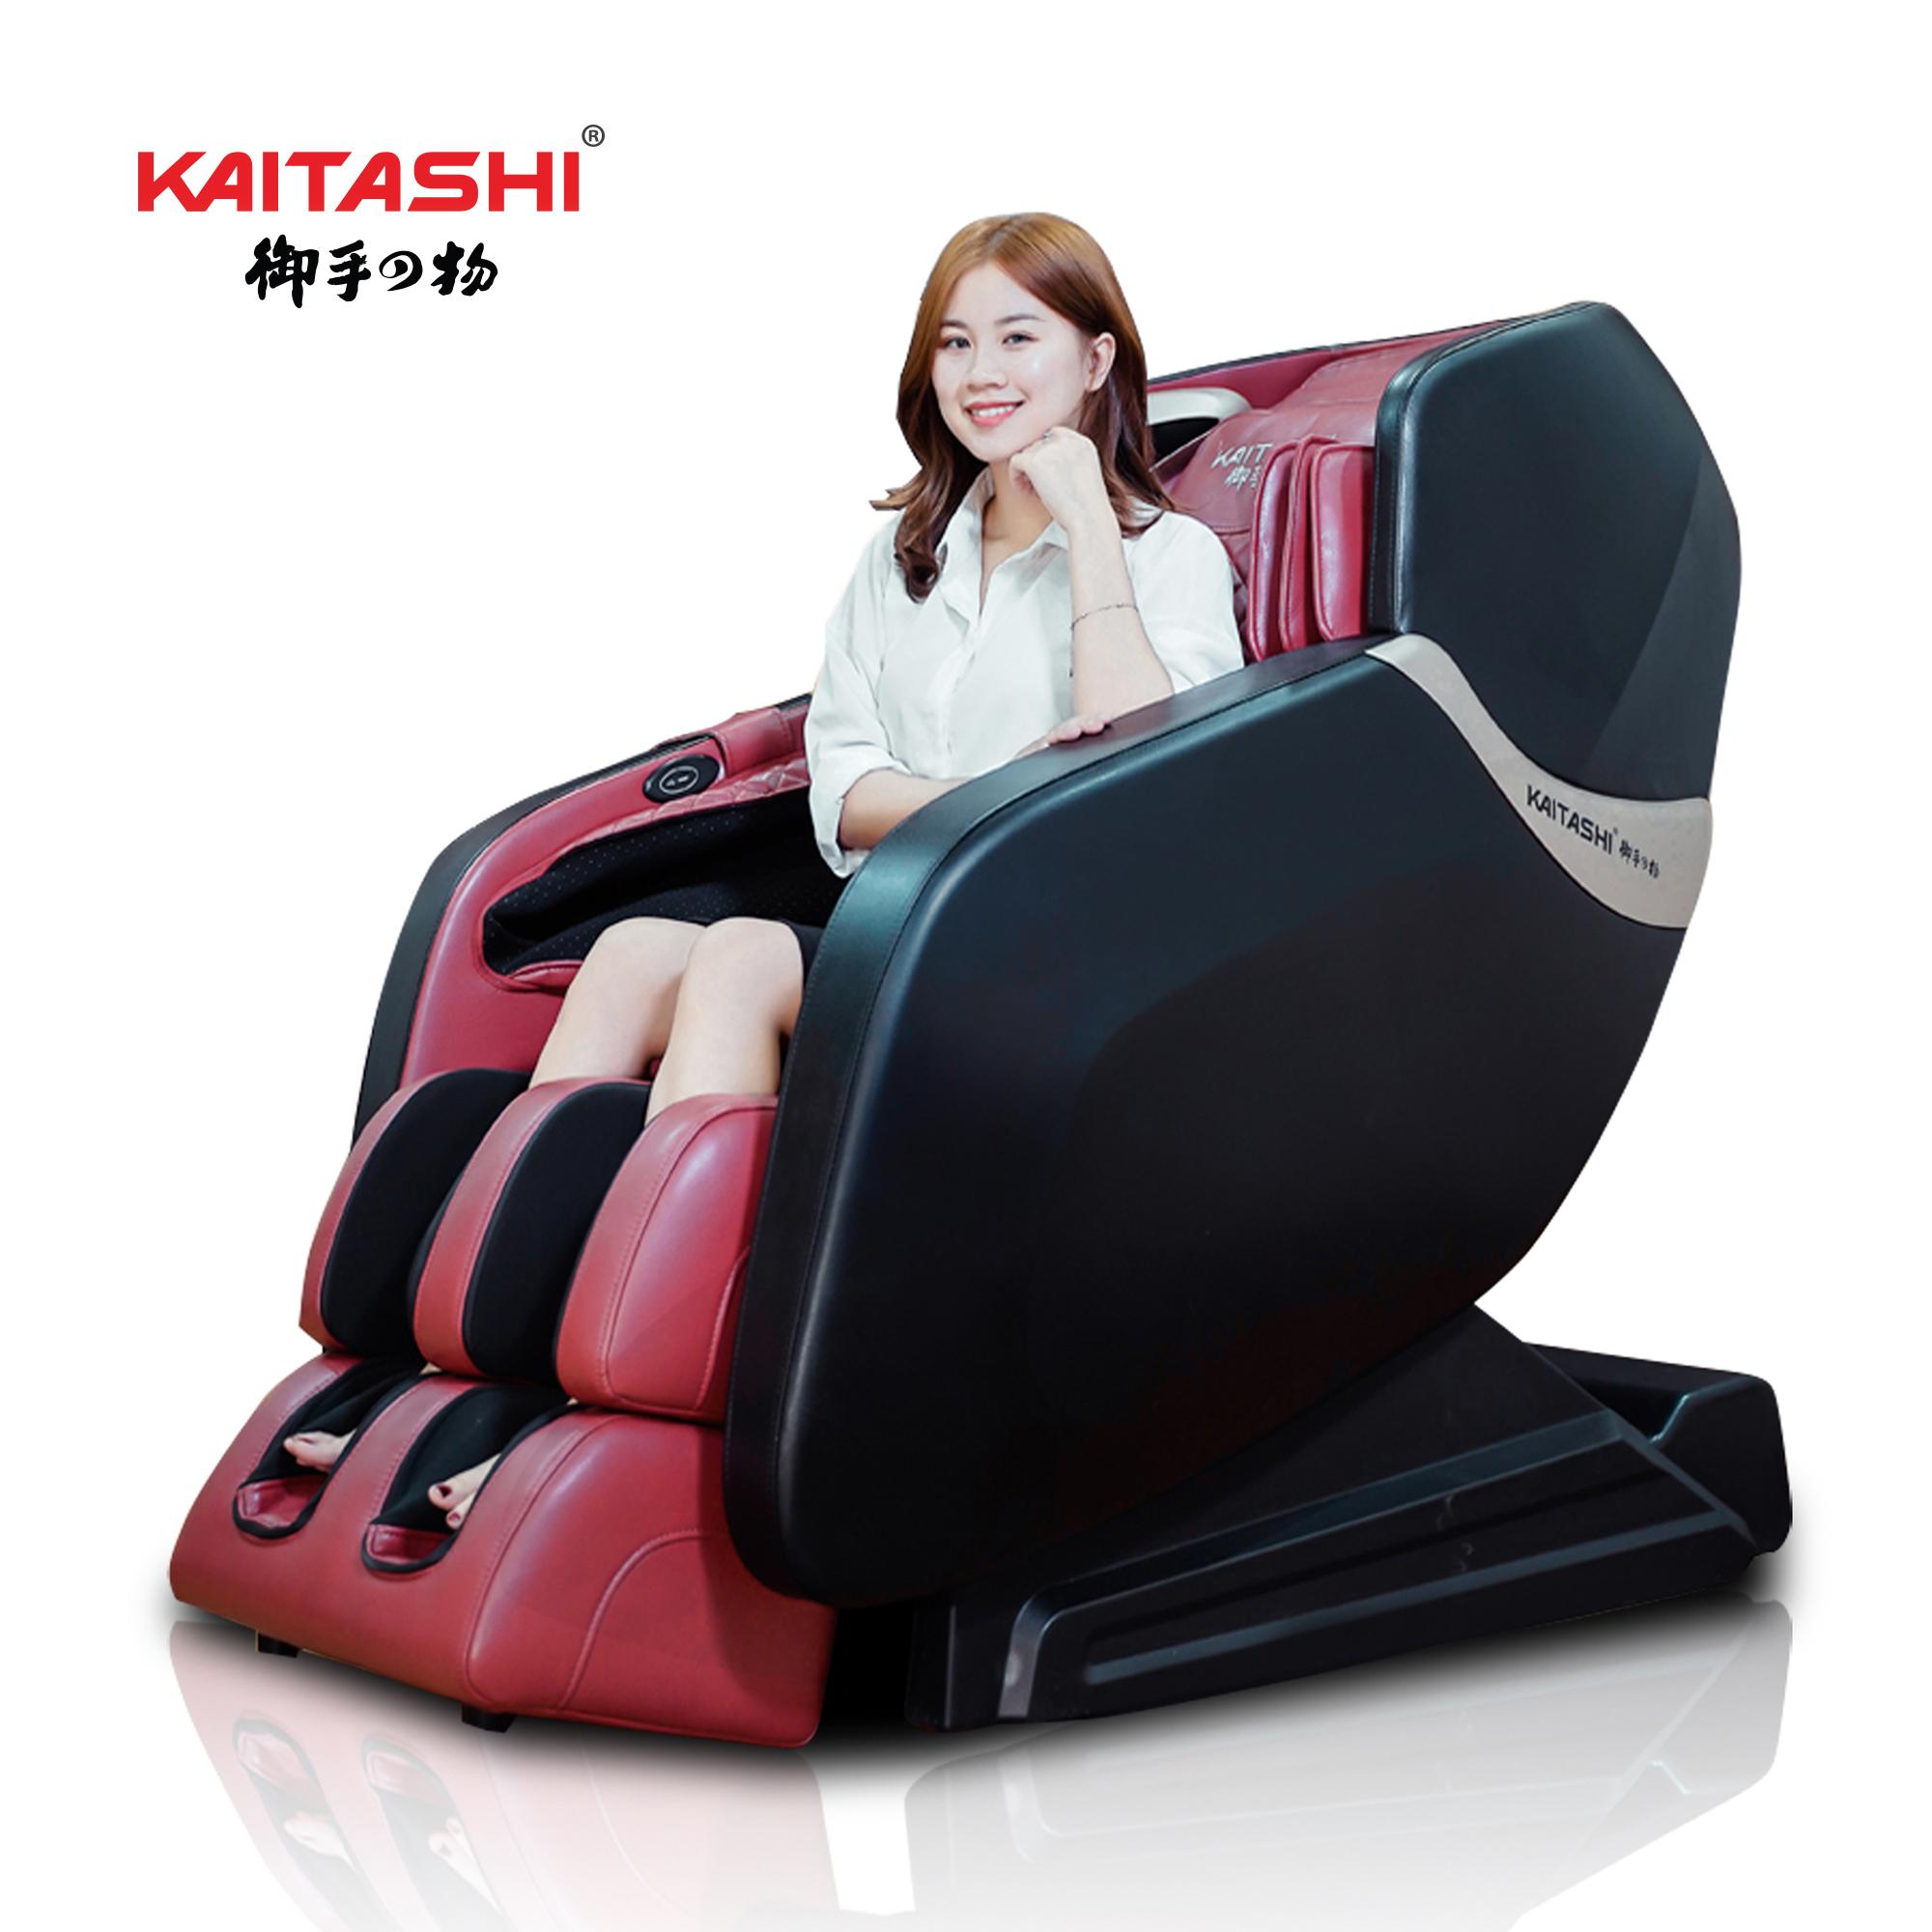 Ghế massage cao cấp Kaitashi KS-600